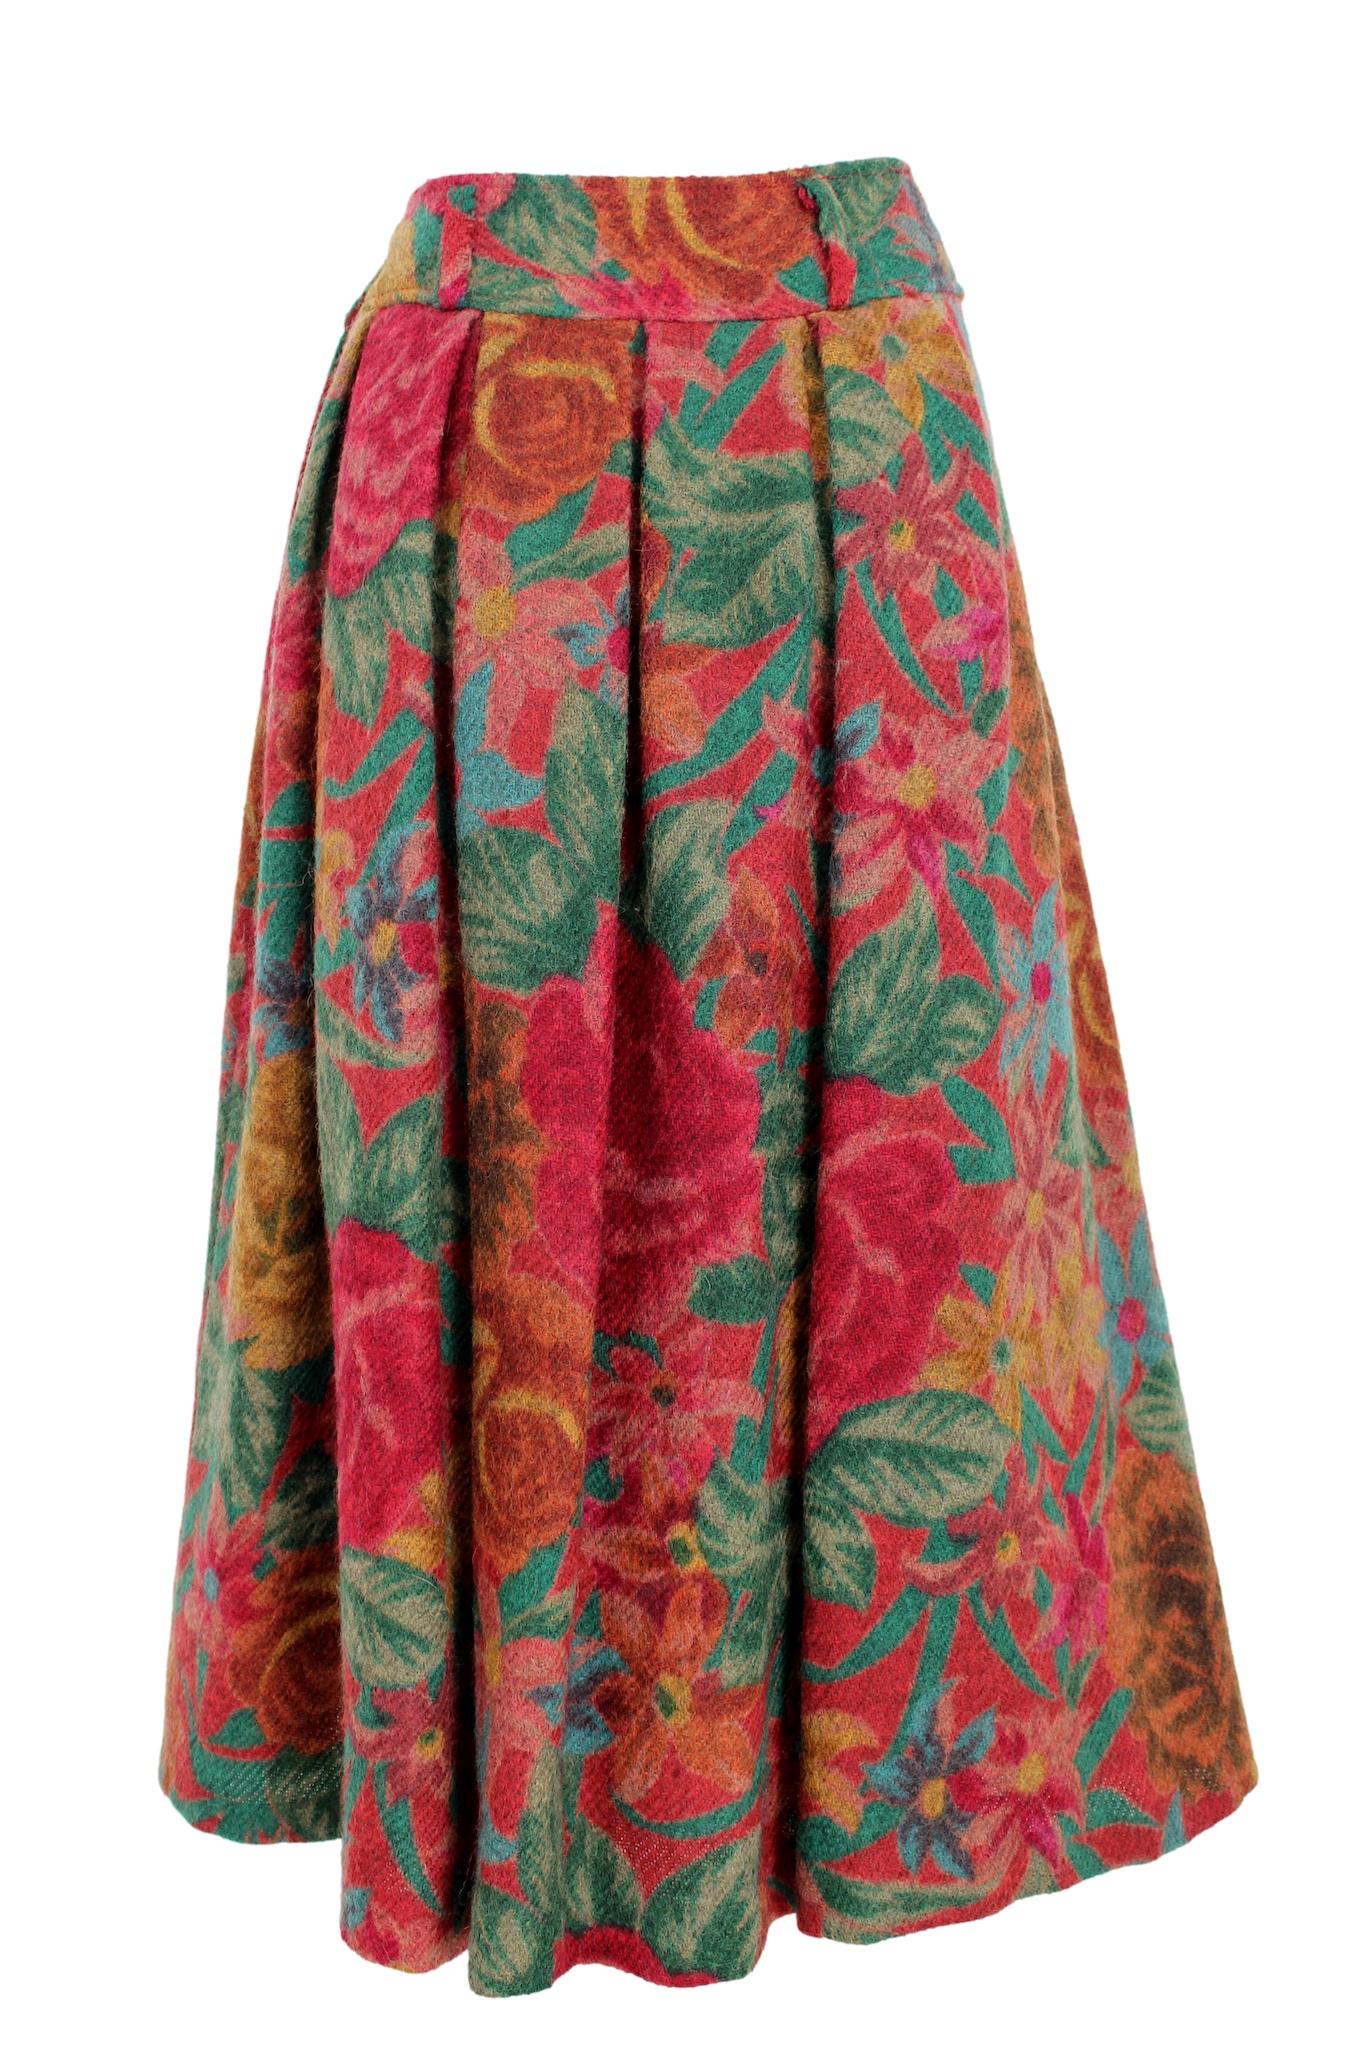 Cette jupe ballon vintage 80s de Kenzo est un ajout unique à toute garde-robe. Fabriquée en laine de haute qualité, cette jupe présente un motif floral vibrant dans des tons de rouge et de vert. La silhouette ballon ajoute une touche ludique à la